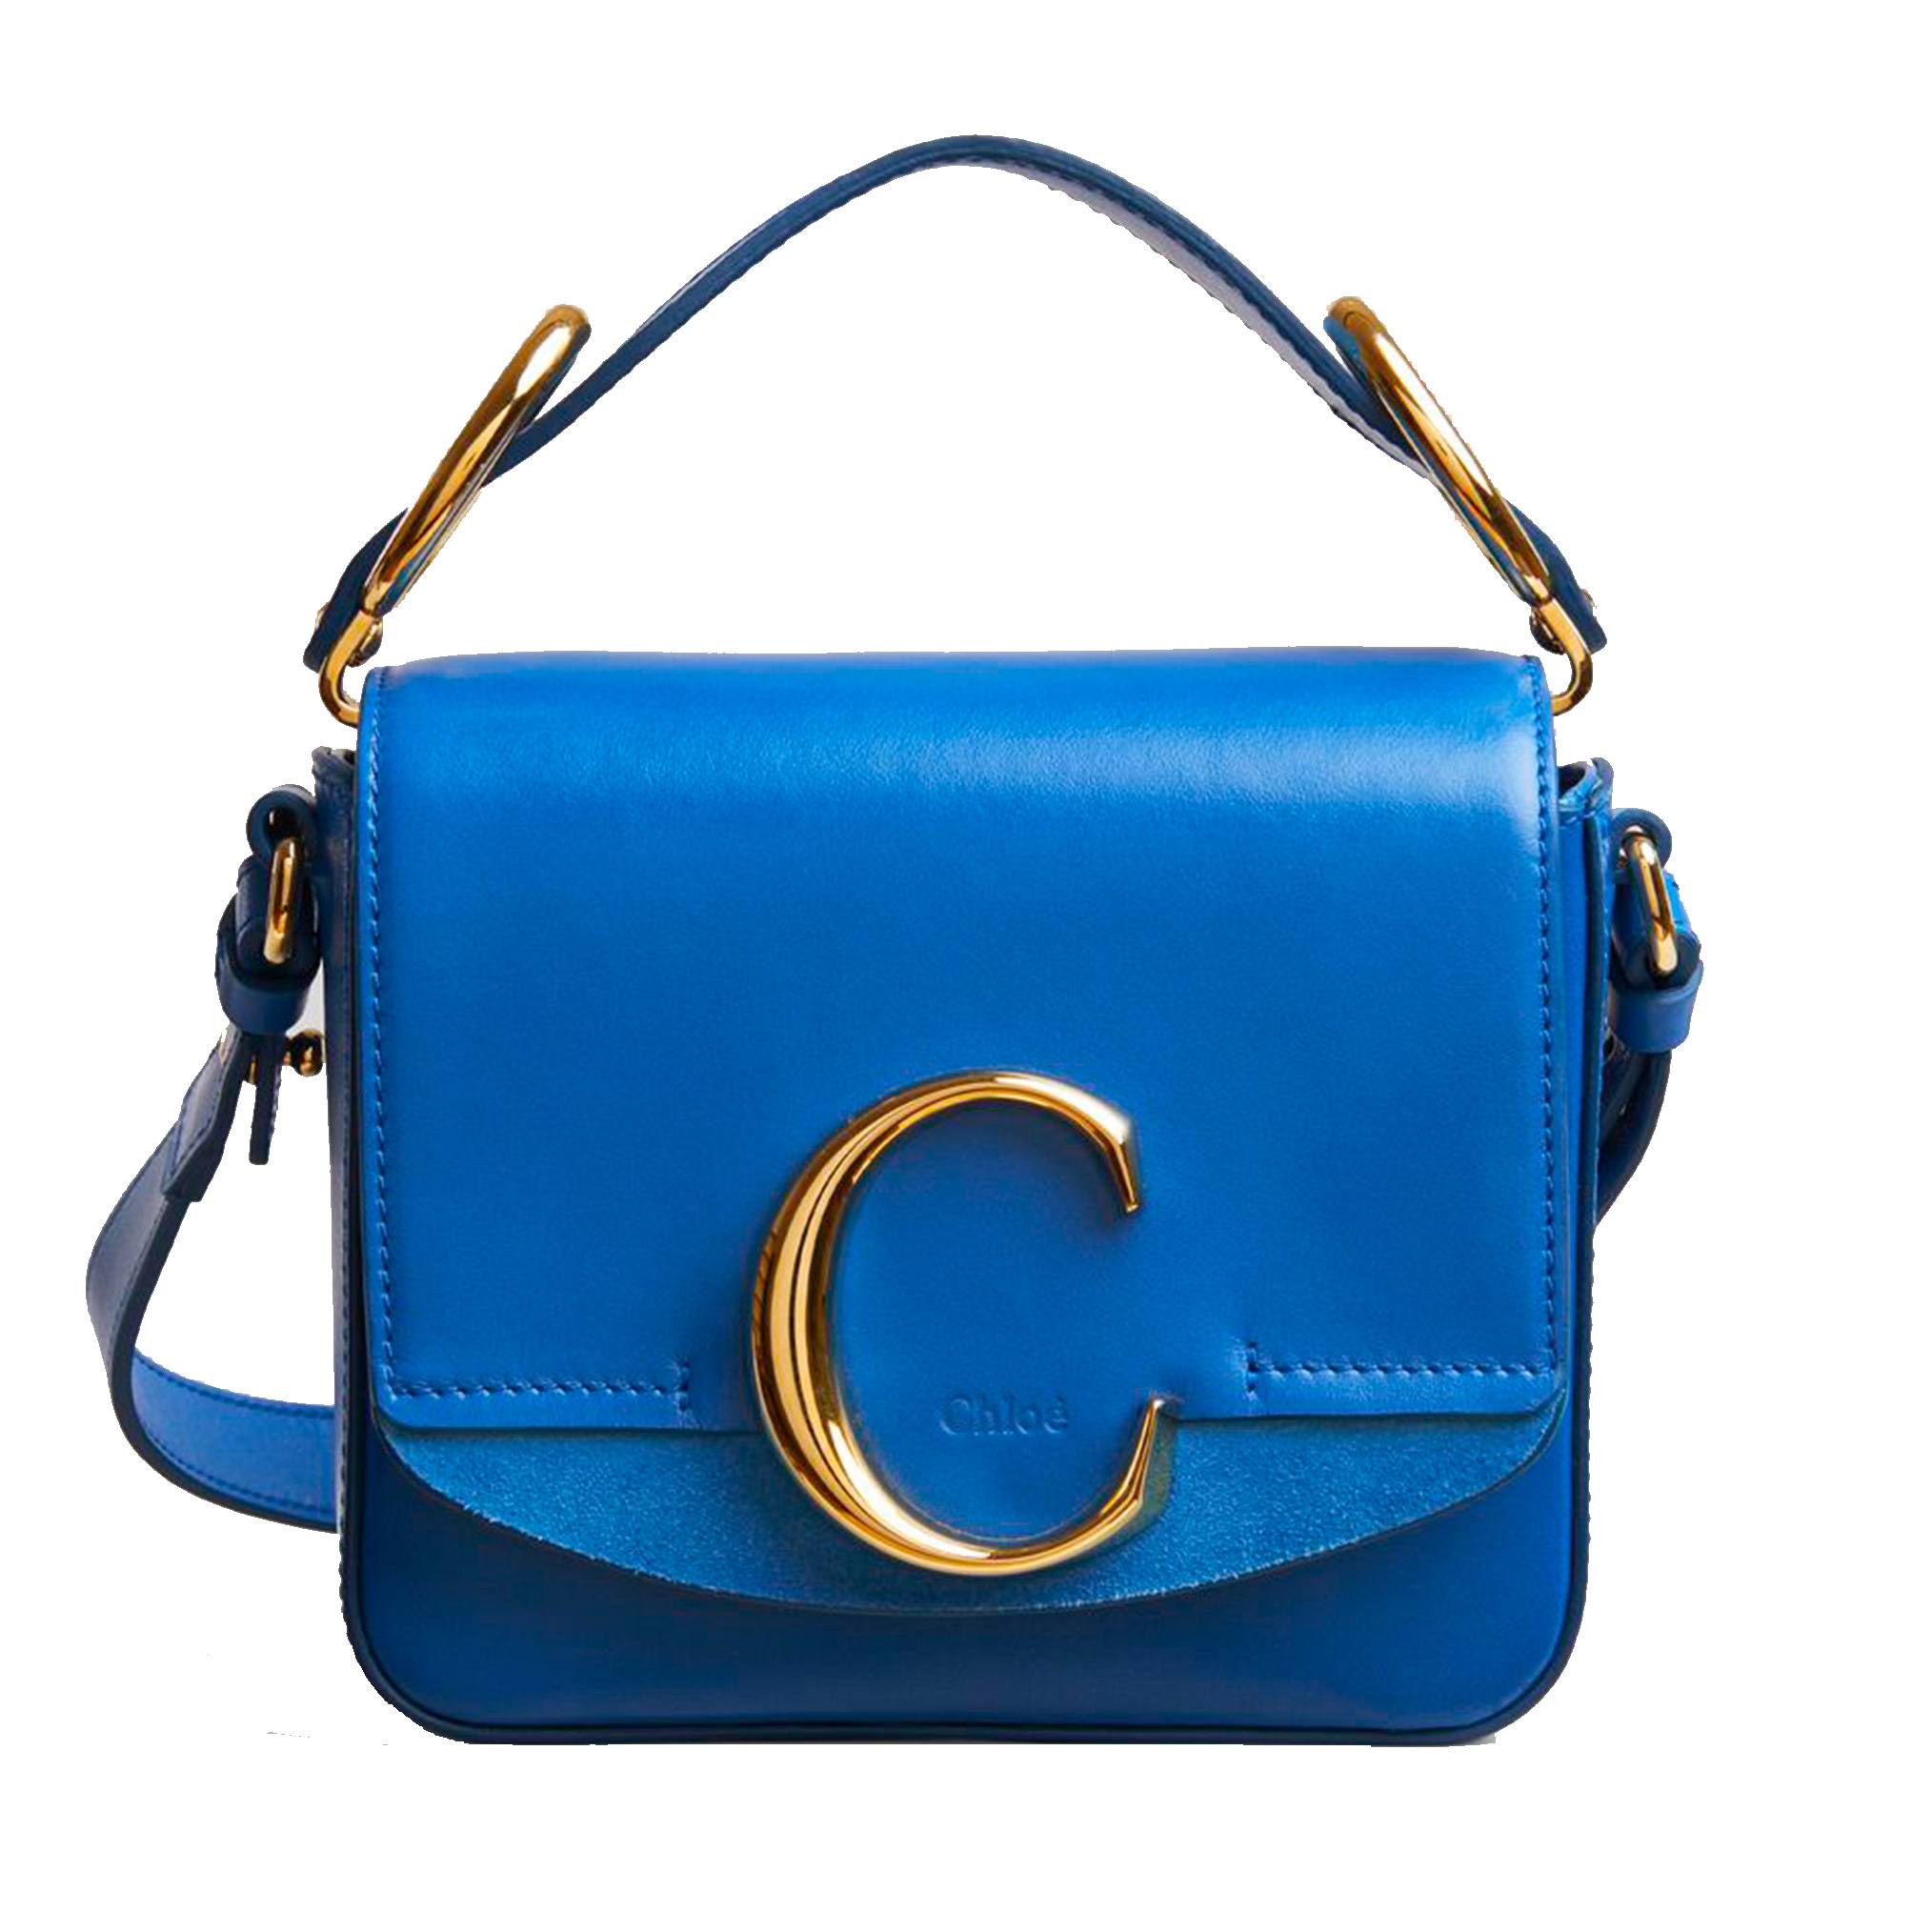 Chloé mini C Bag in blue suede and calfskin